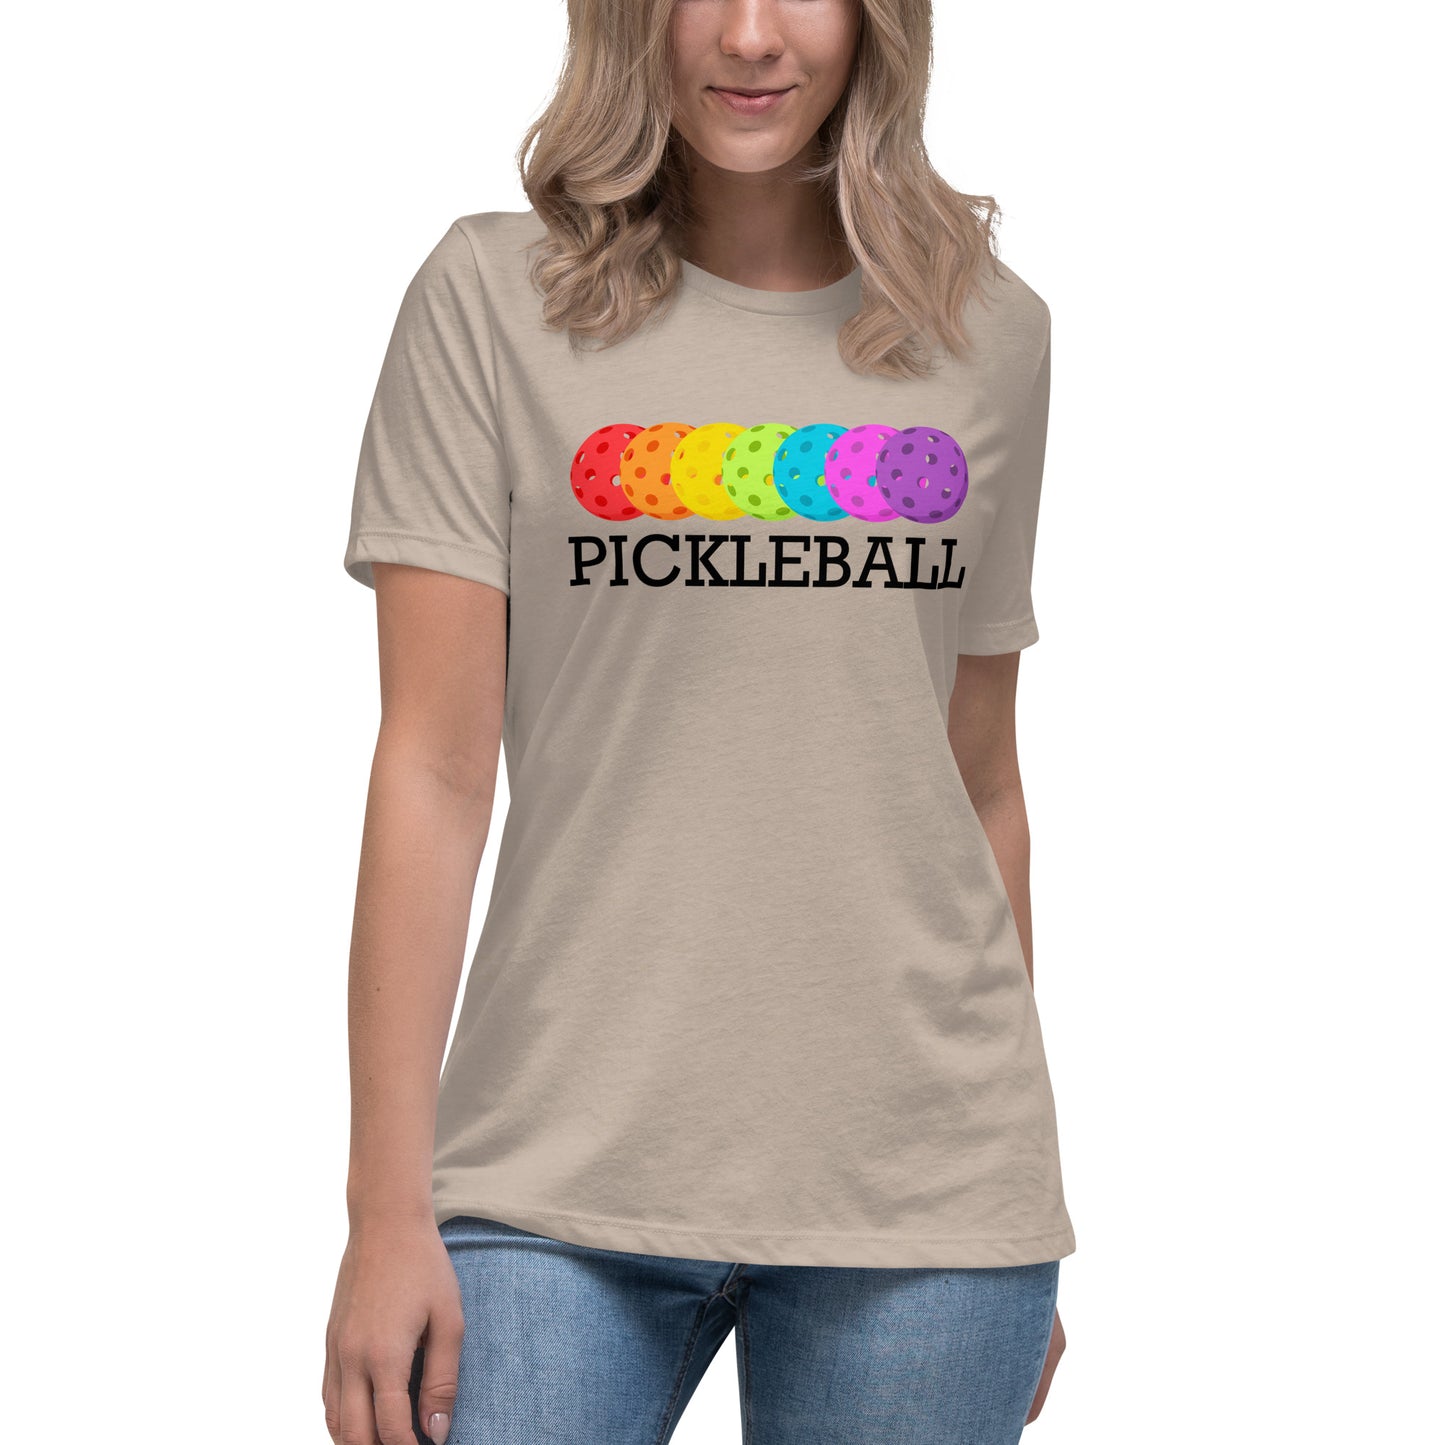 Pickleball - Women's Relaxed T-Shirt